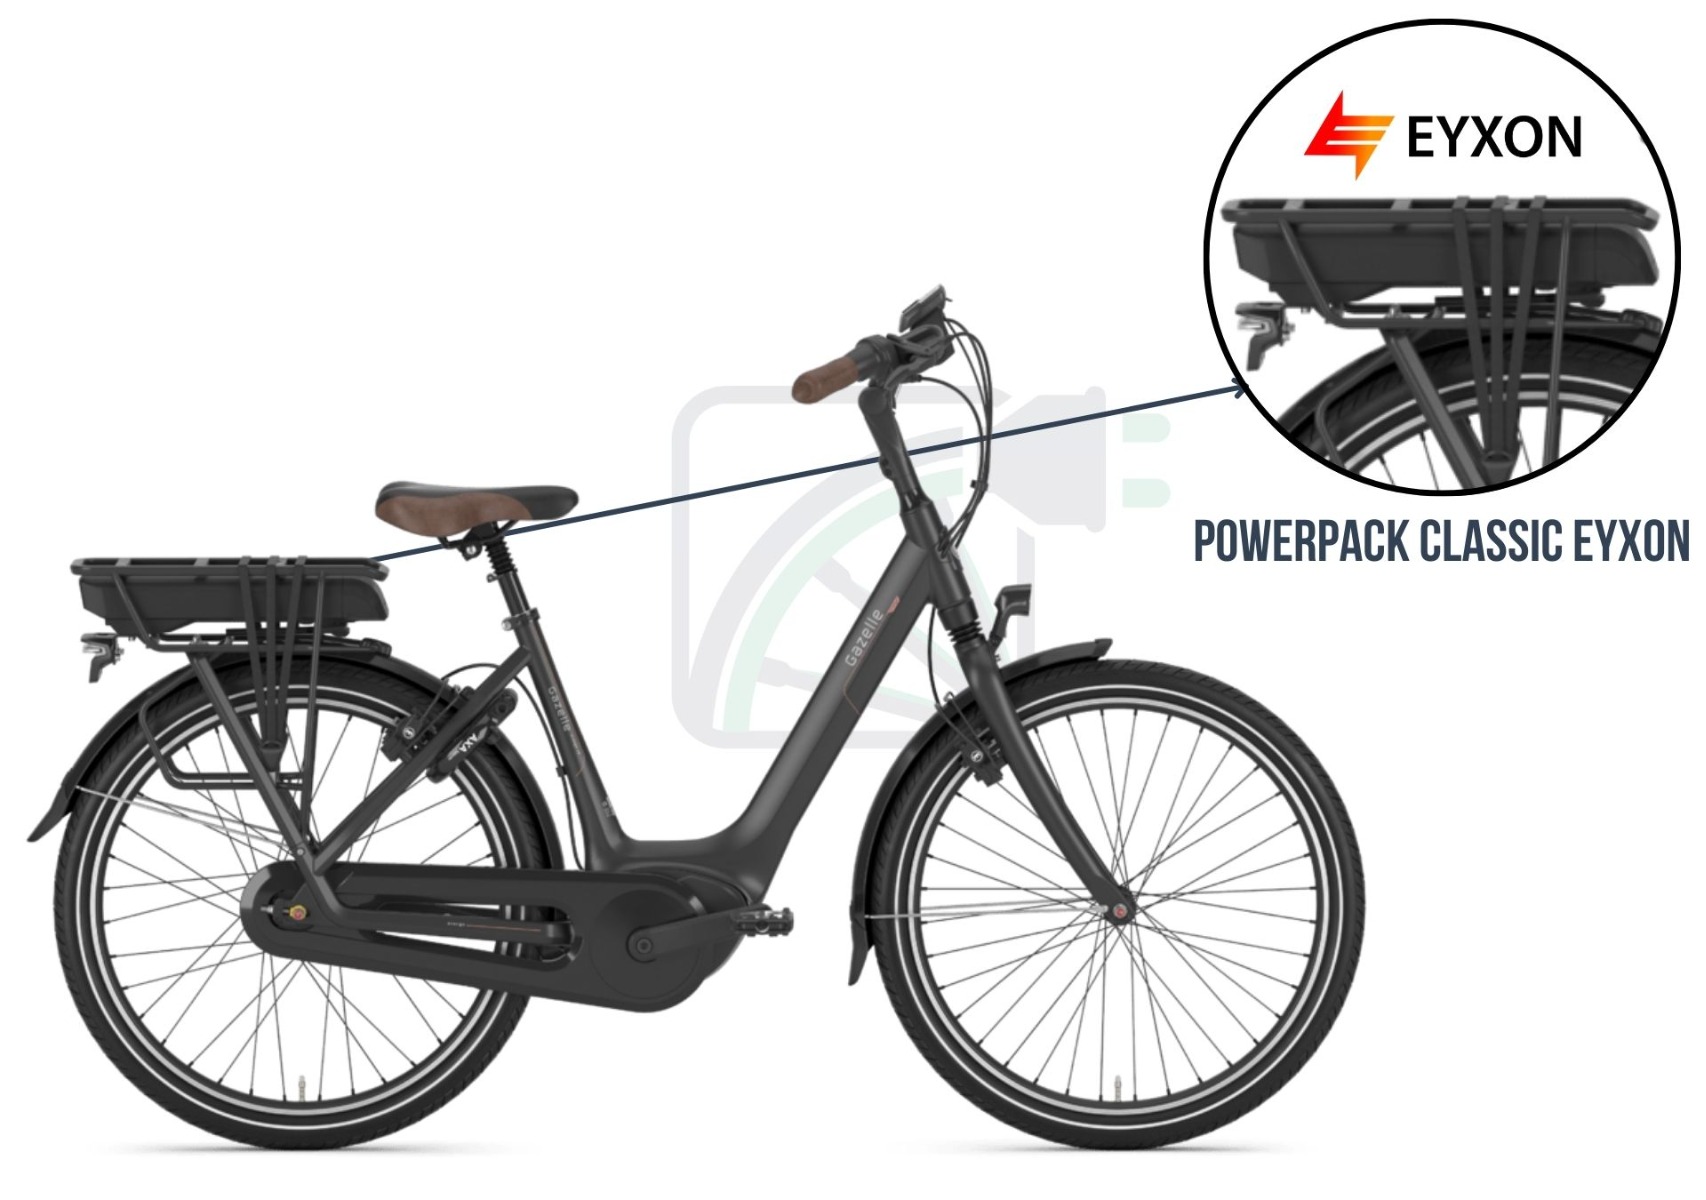 Ein Teil des Bildes ist vergrößert und die Batterie des Fahrrads ist hervorgehoben. Die möglichen Batterien für dieses Elektrofahrrad sind auch erwähnt. Diese zijj die Bosch Powerpack classic kompatibel Batterien von EYXON.